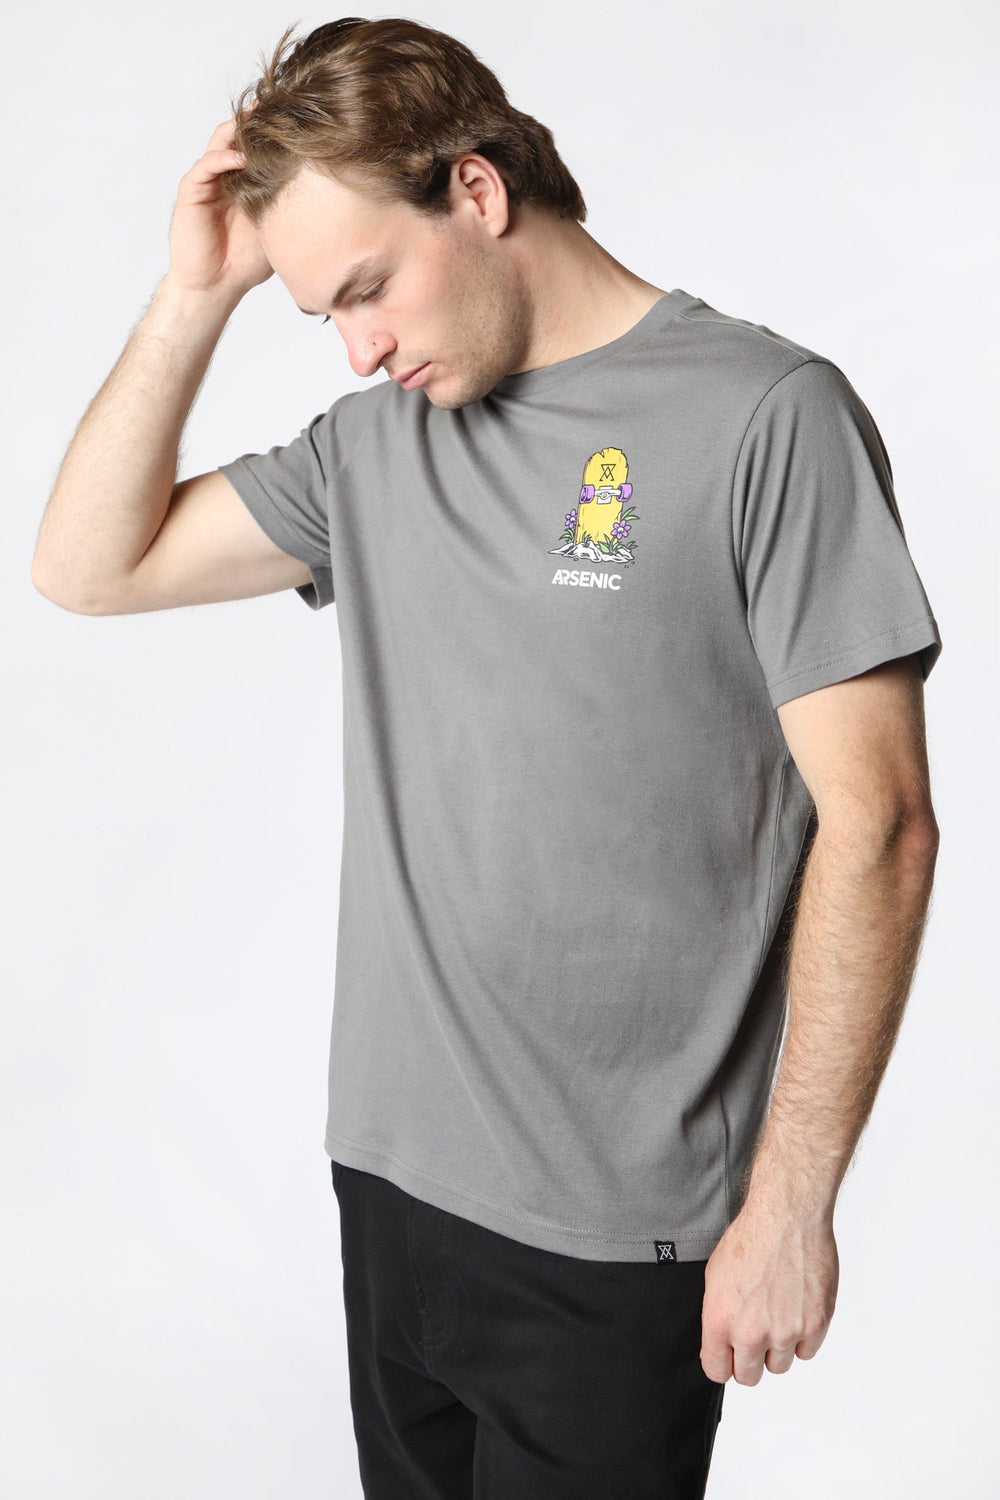 T-Shirt Imprimé No Regrets Arsenic Homme Gris fonce